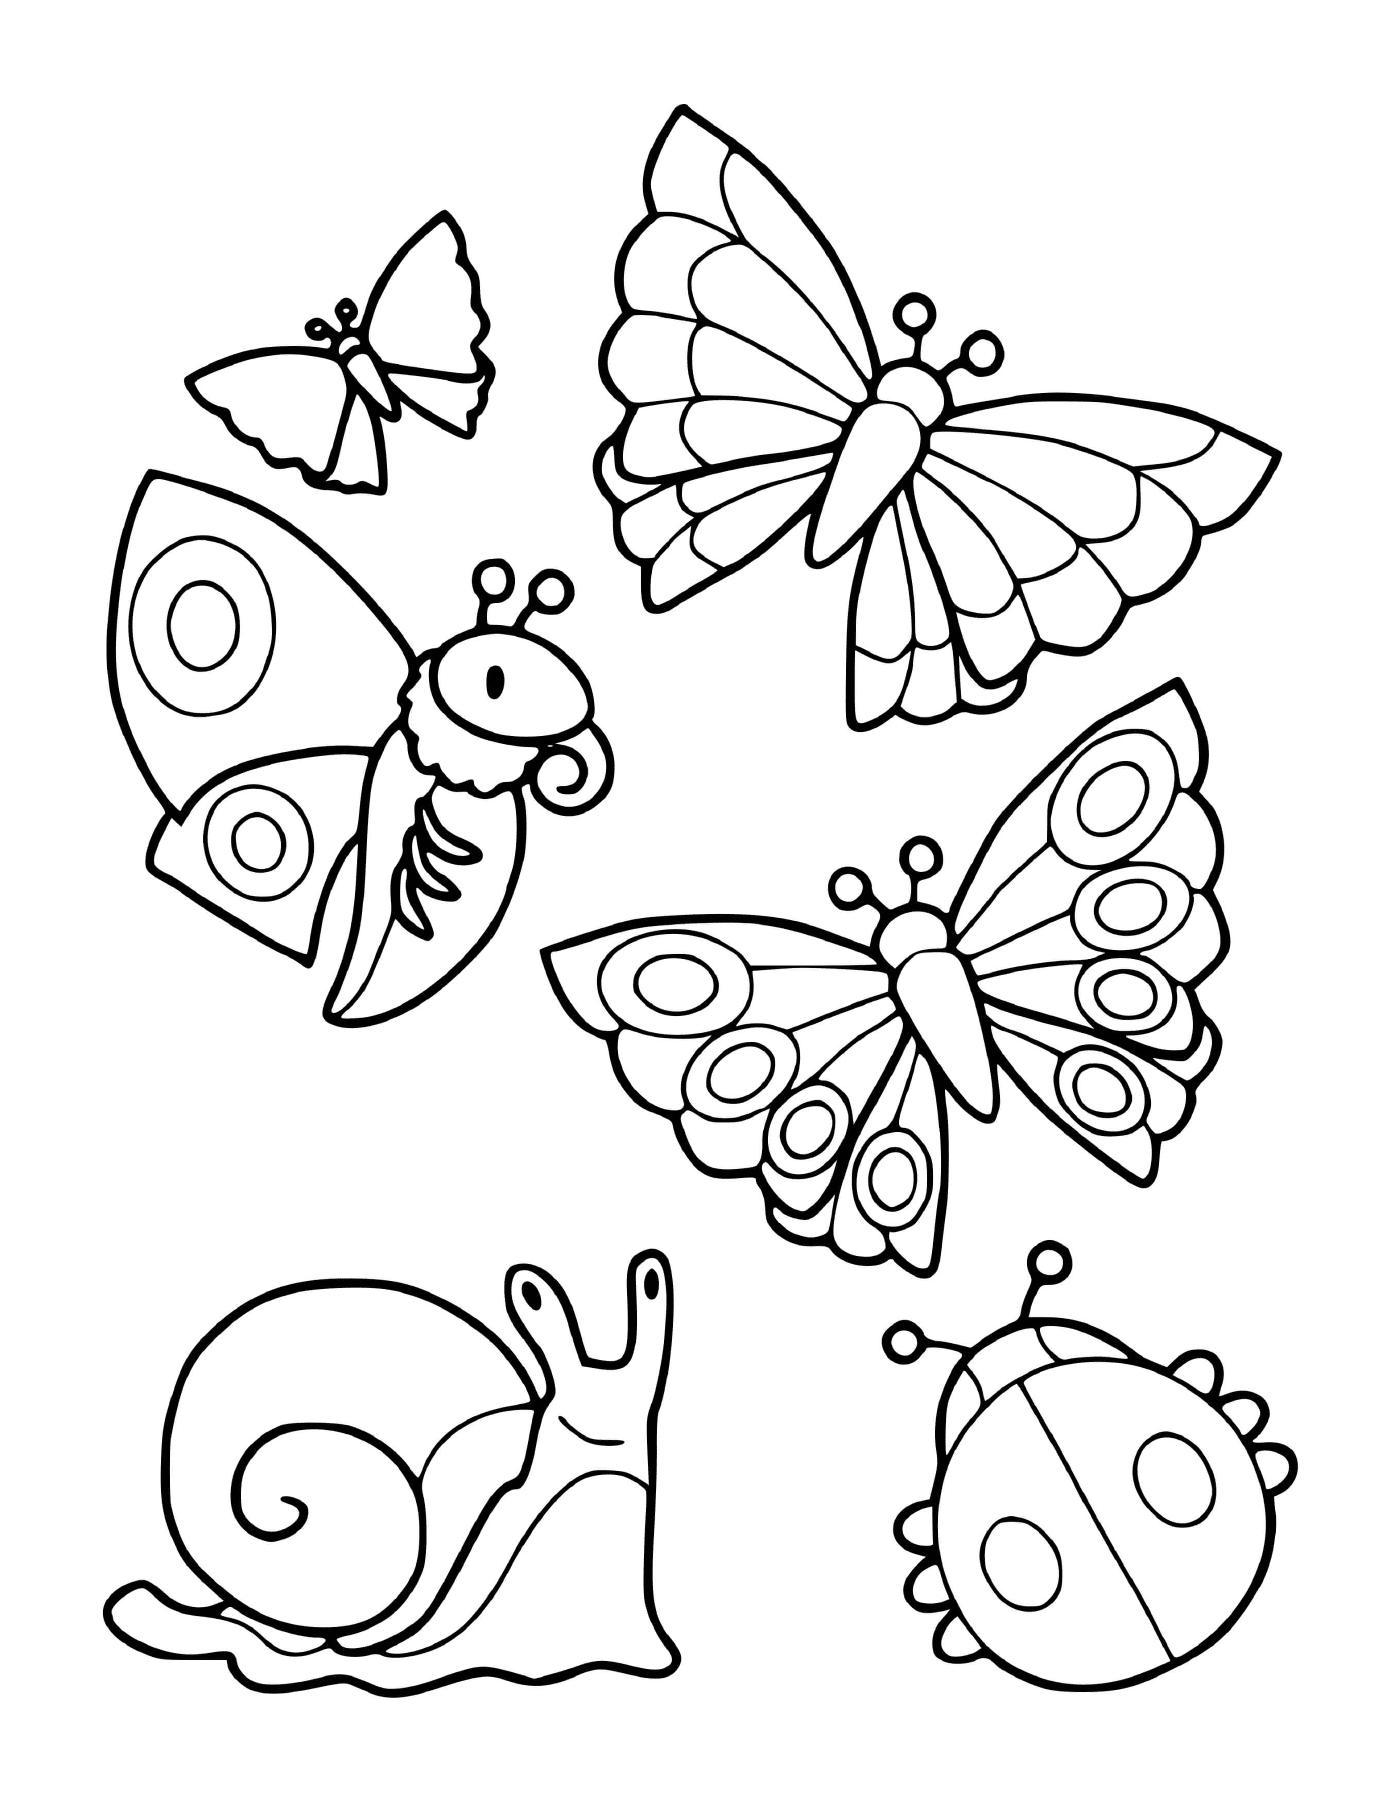  Коллекция насекомых, включая бабочек и улитку 